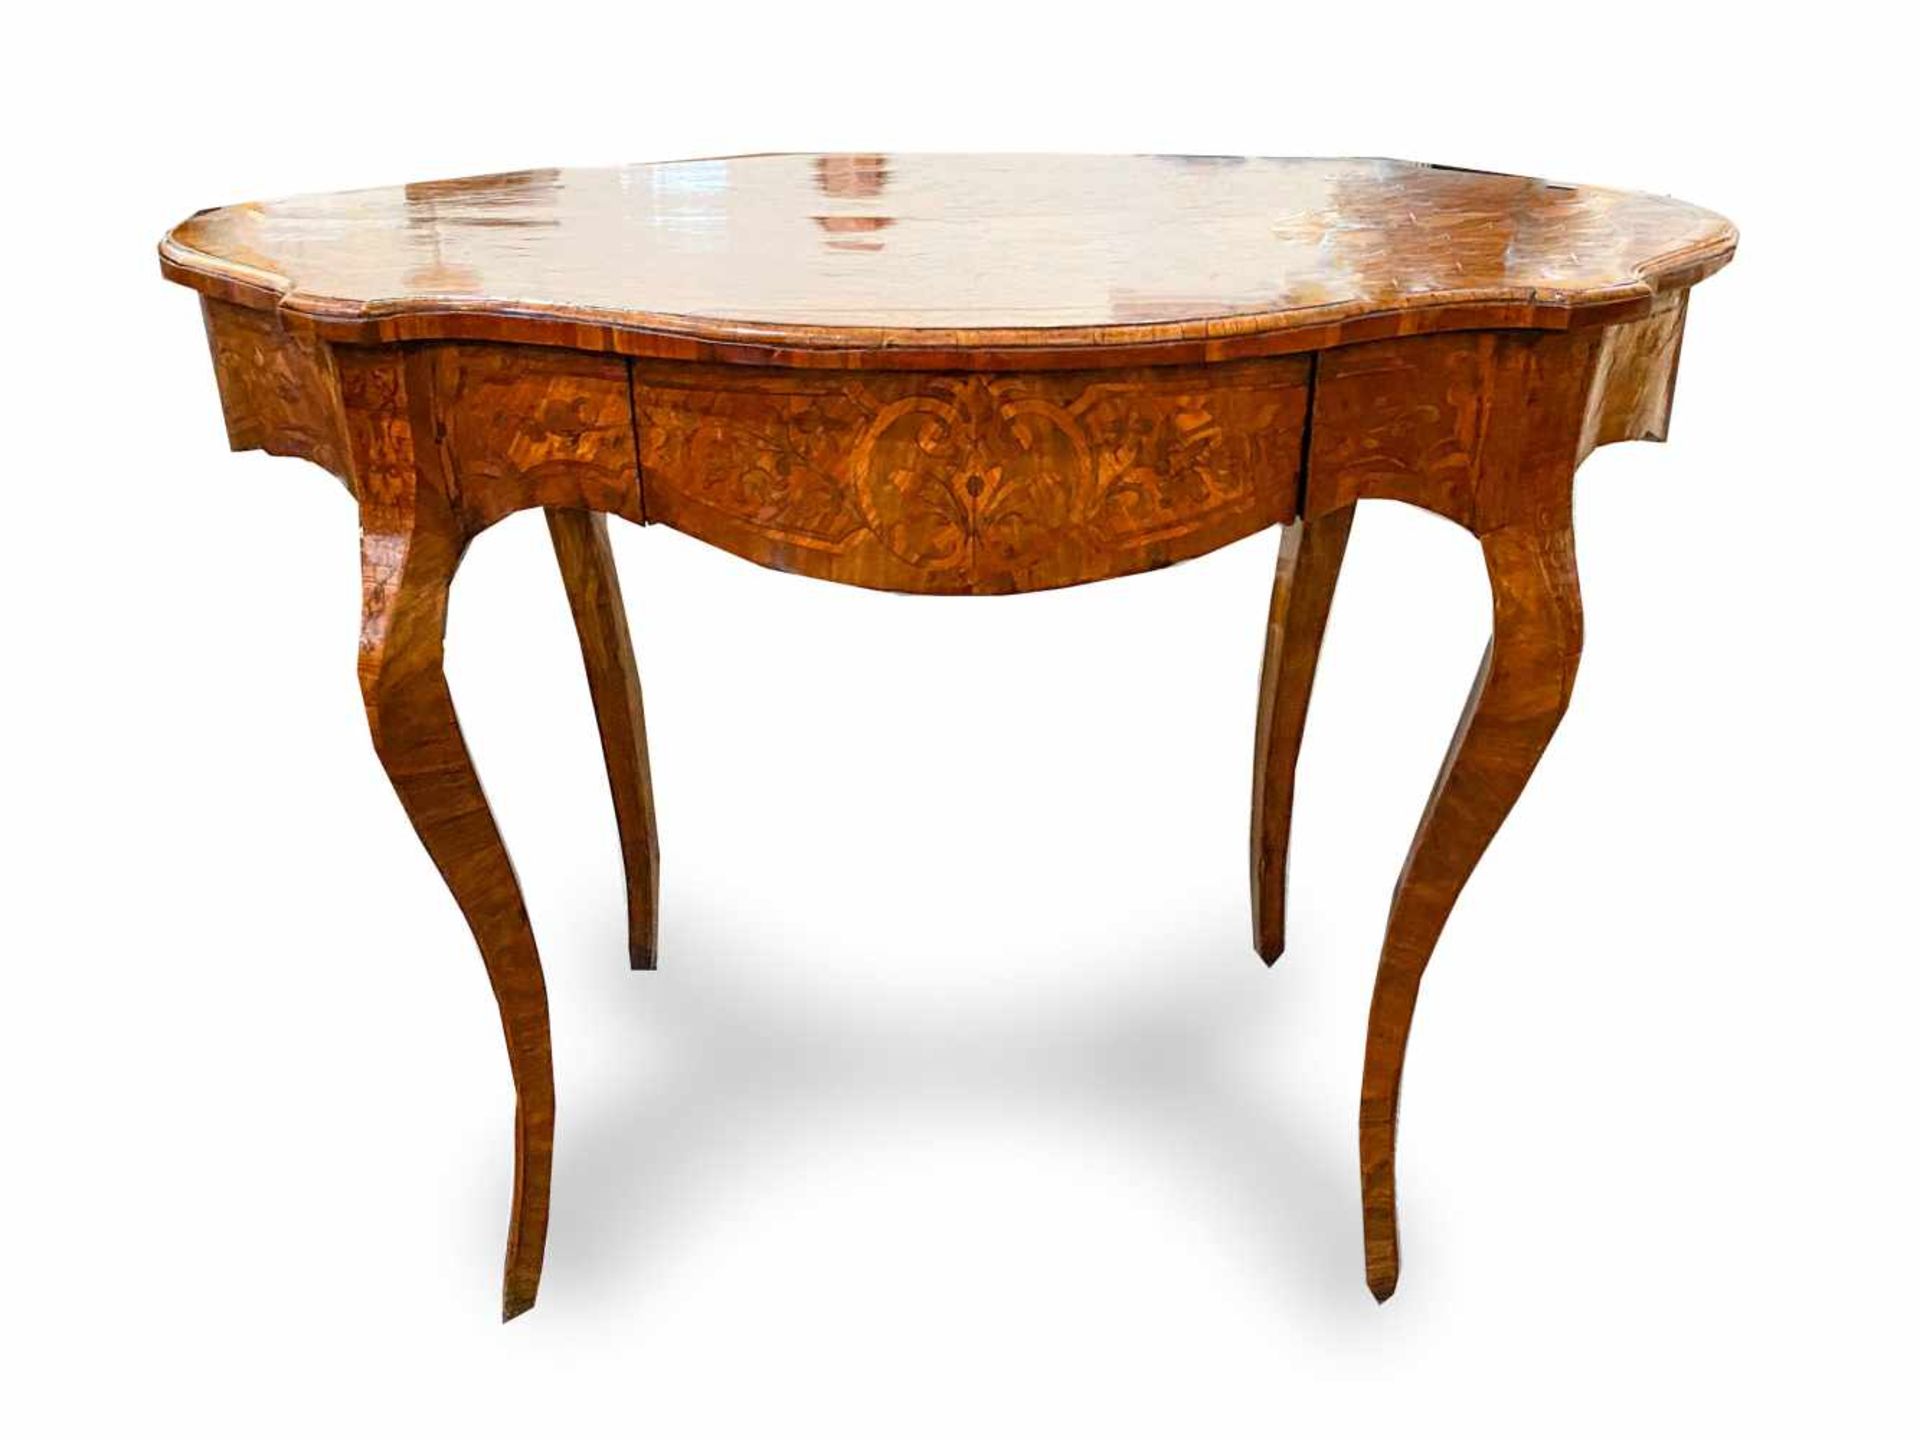 PETITE TABLE DE STYLE LOUIS XV, FRANCE 19ème SIECLEEn bois de placage avec incrustations d'